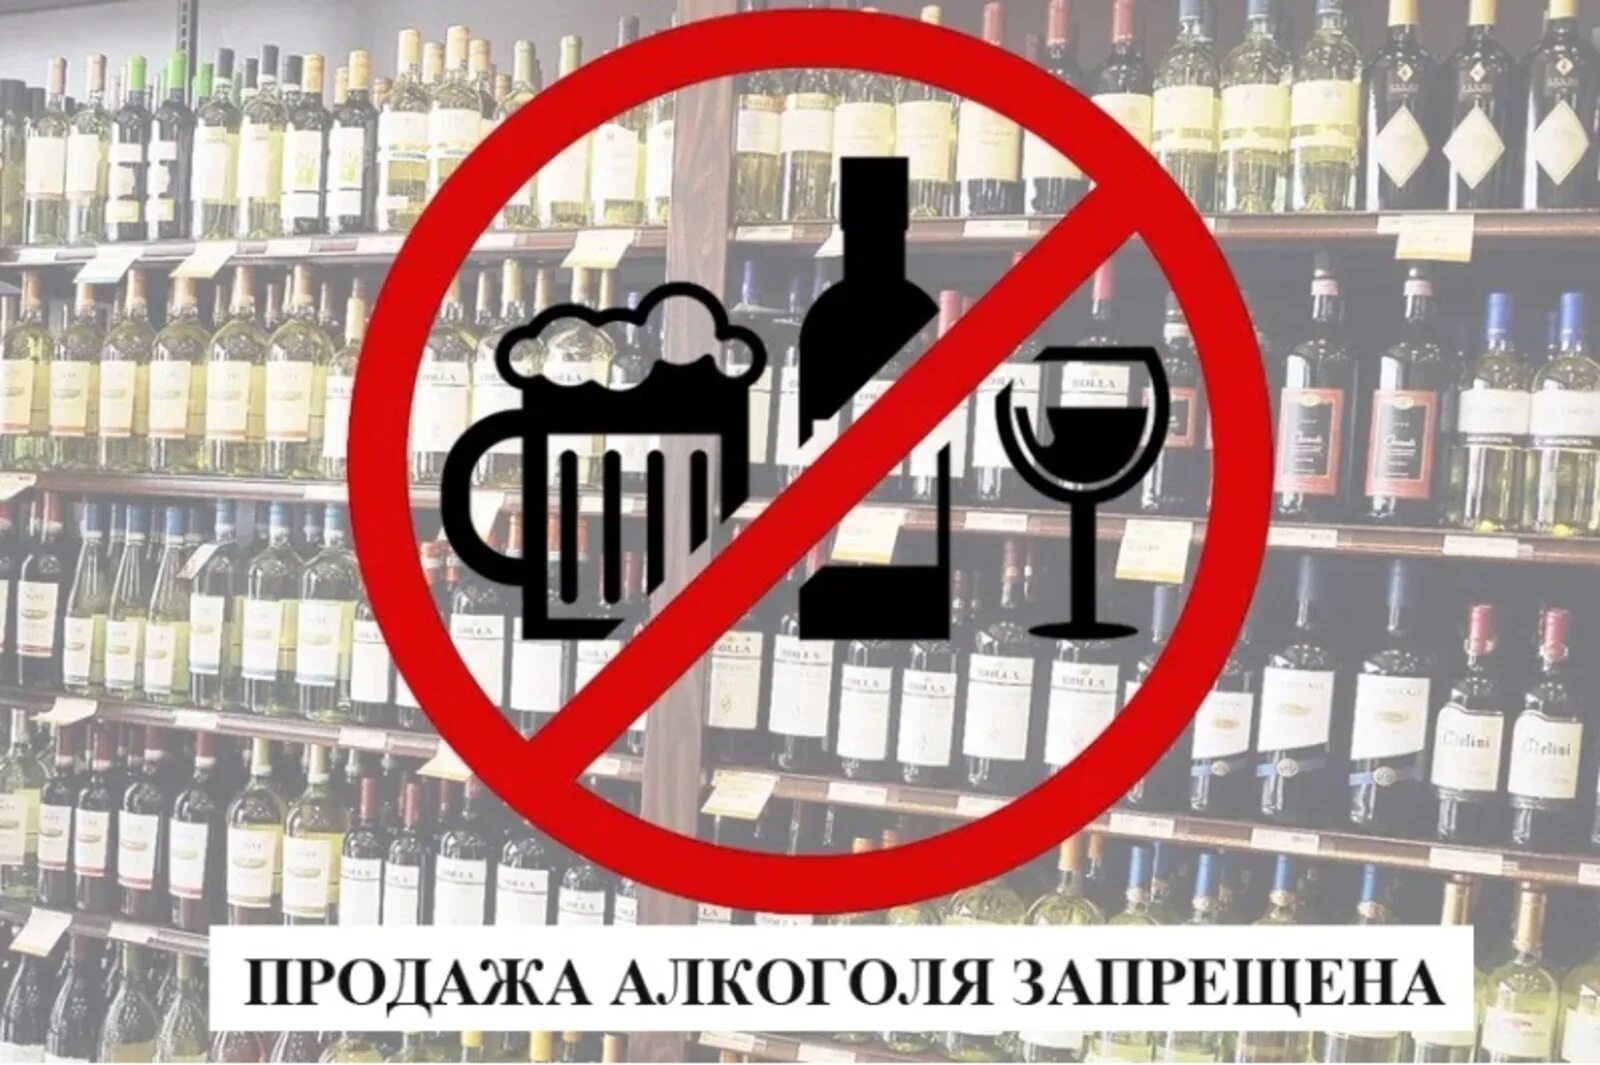 23 июня продажа. Ограничение торговли алкоголем. Запрет алкогольной продукции запрет на продажу.